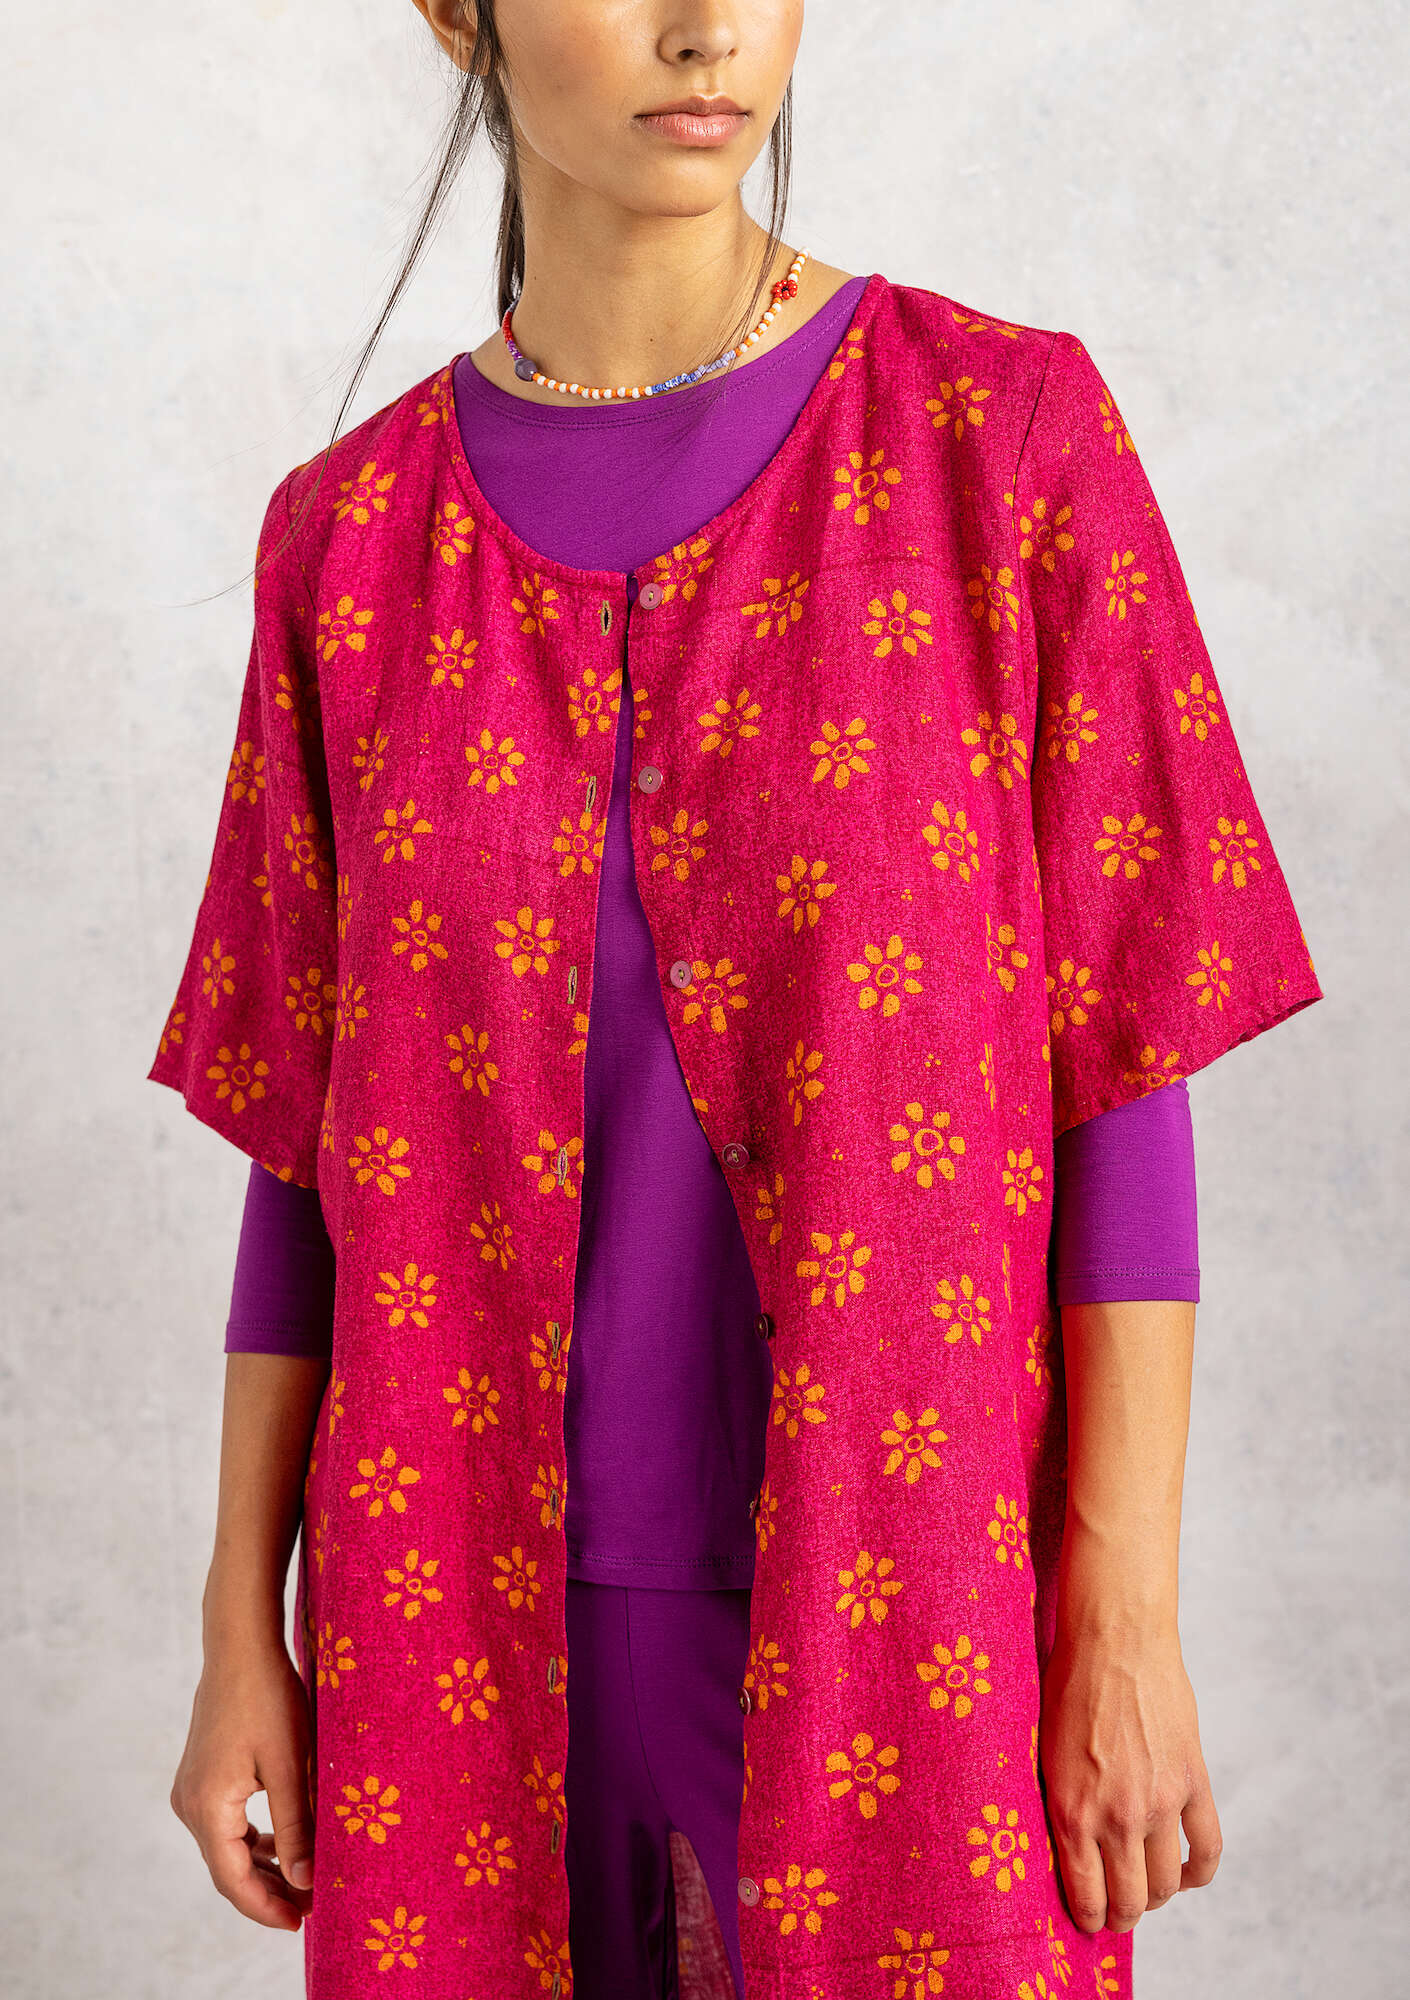 Ester dress cyclamen/patterned